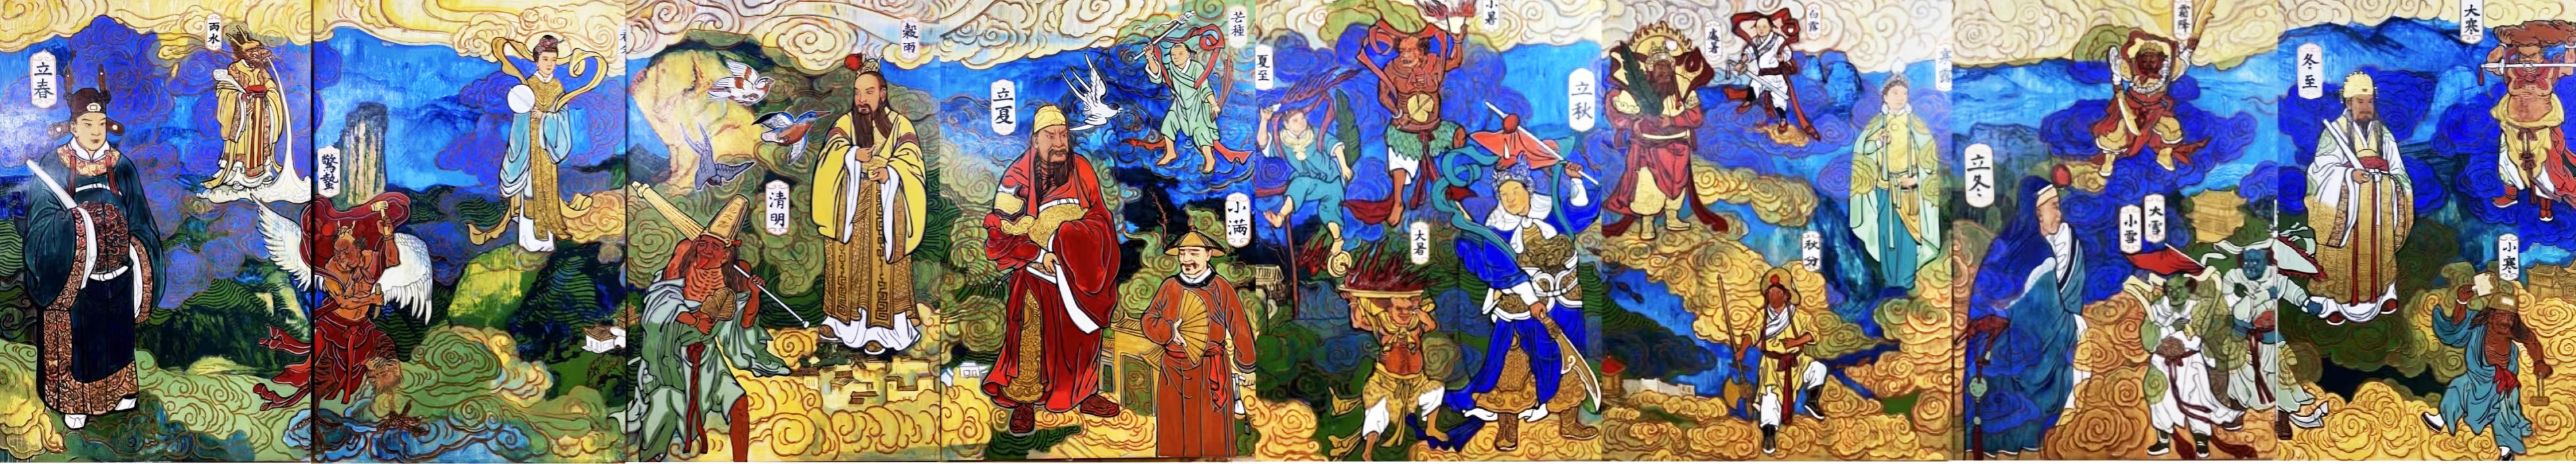 二十四节气神将图——著名画家「王俊英」壁画作品欣赏